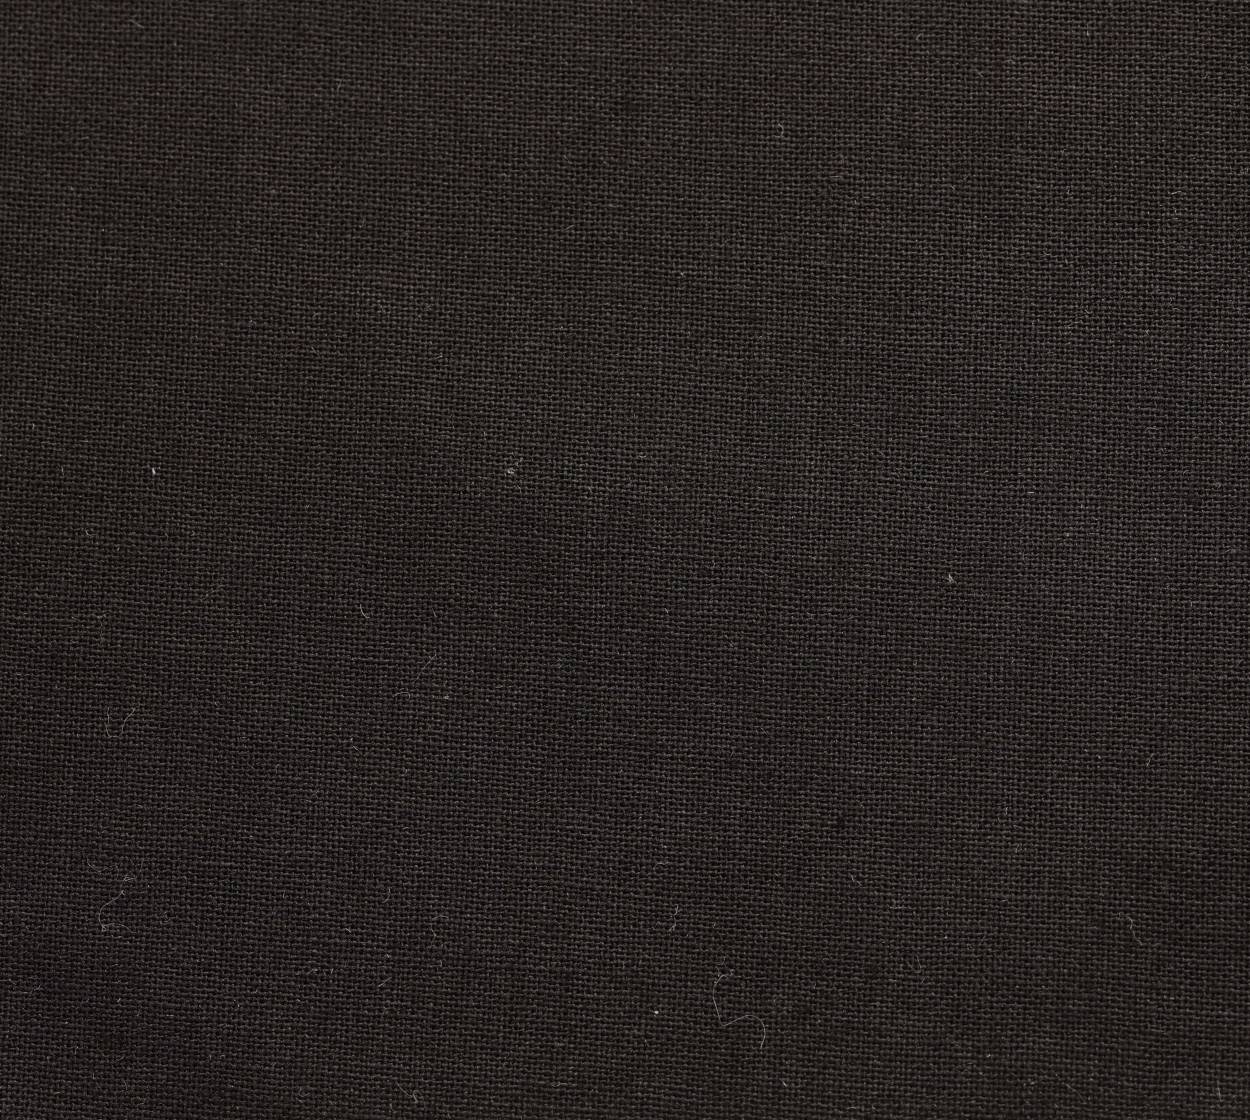 Nessel Baumwolle, schwarz 347, 10,00 m breit, 6N62 im Stamm online Store München